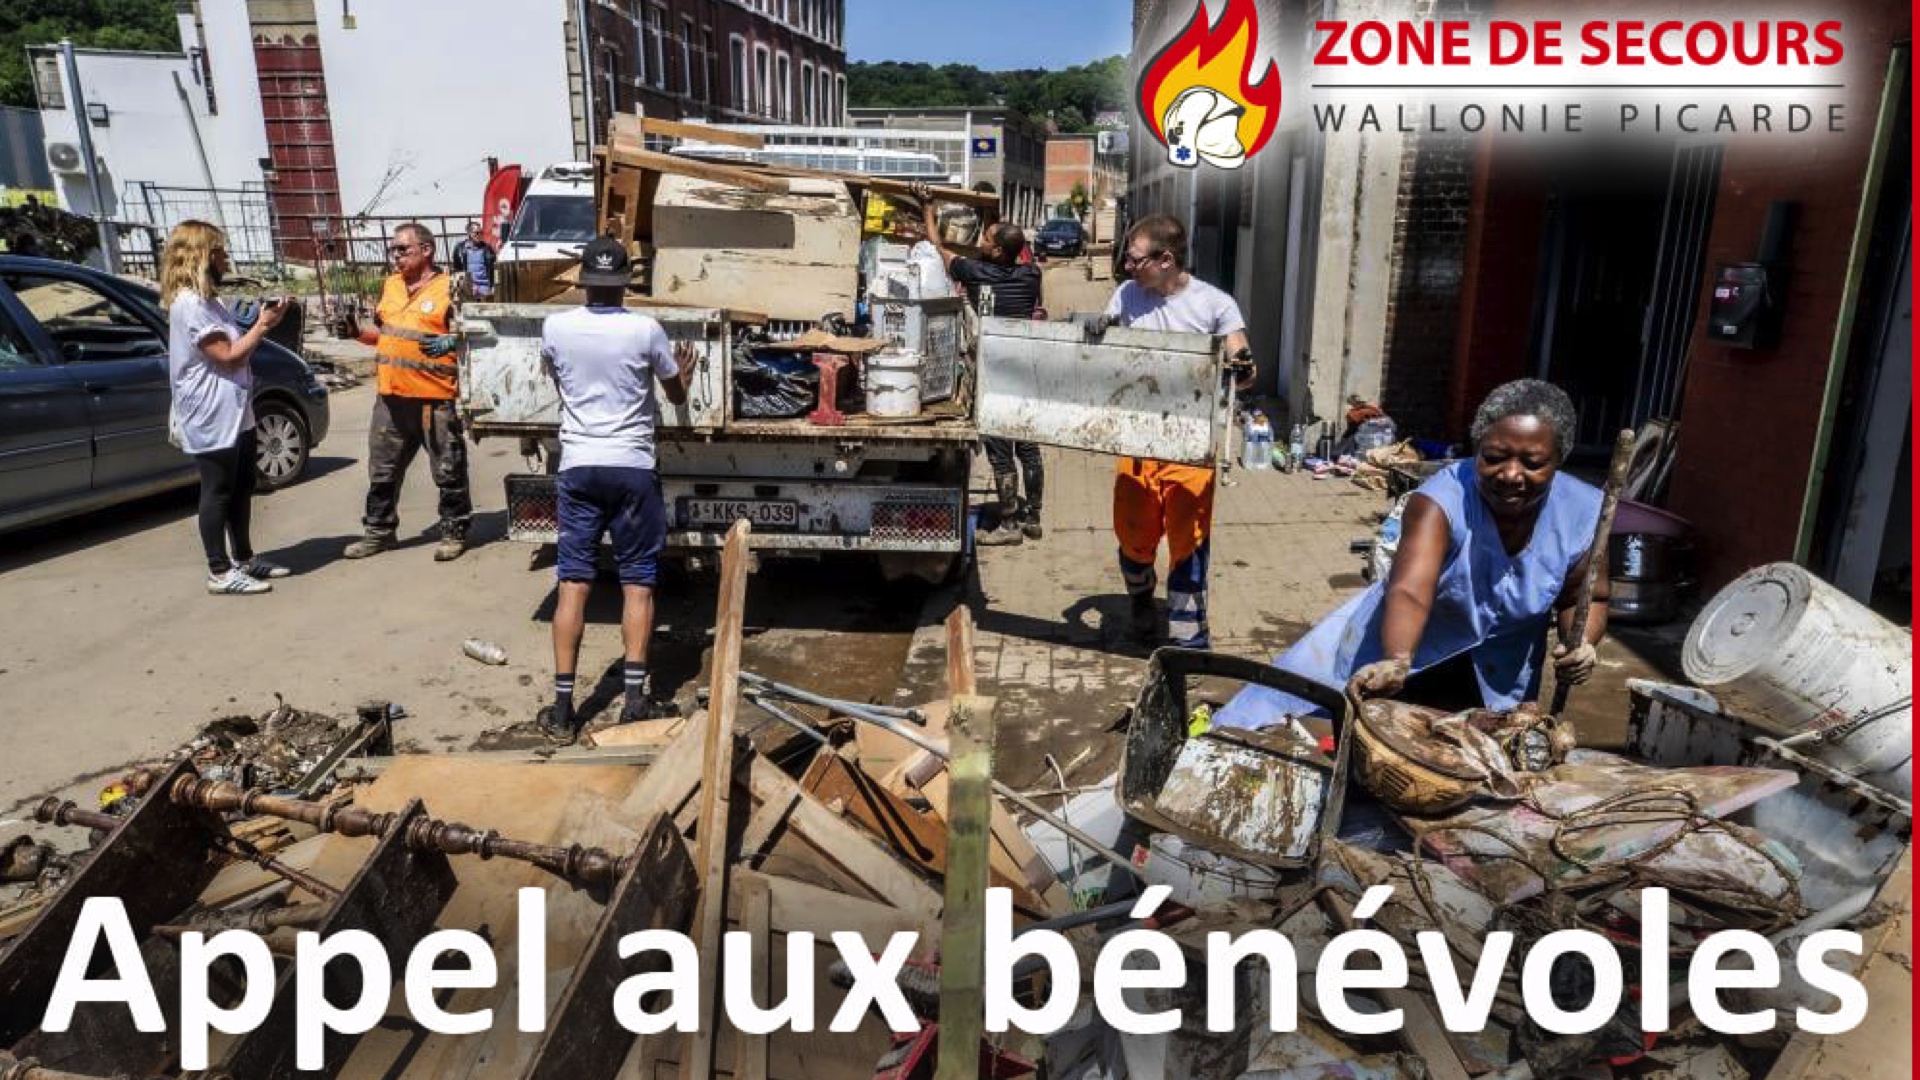 La zone de secours de Wallonie picarde lance un important appel aux bénévoles